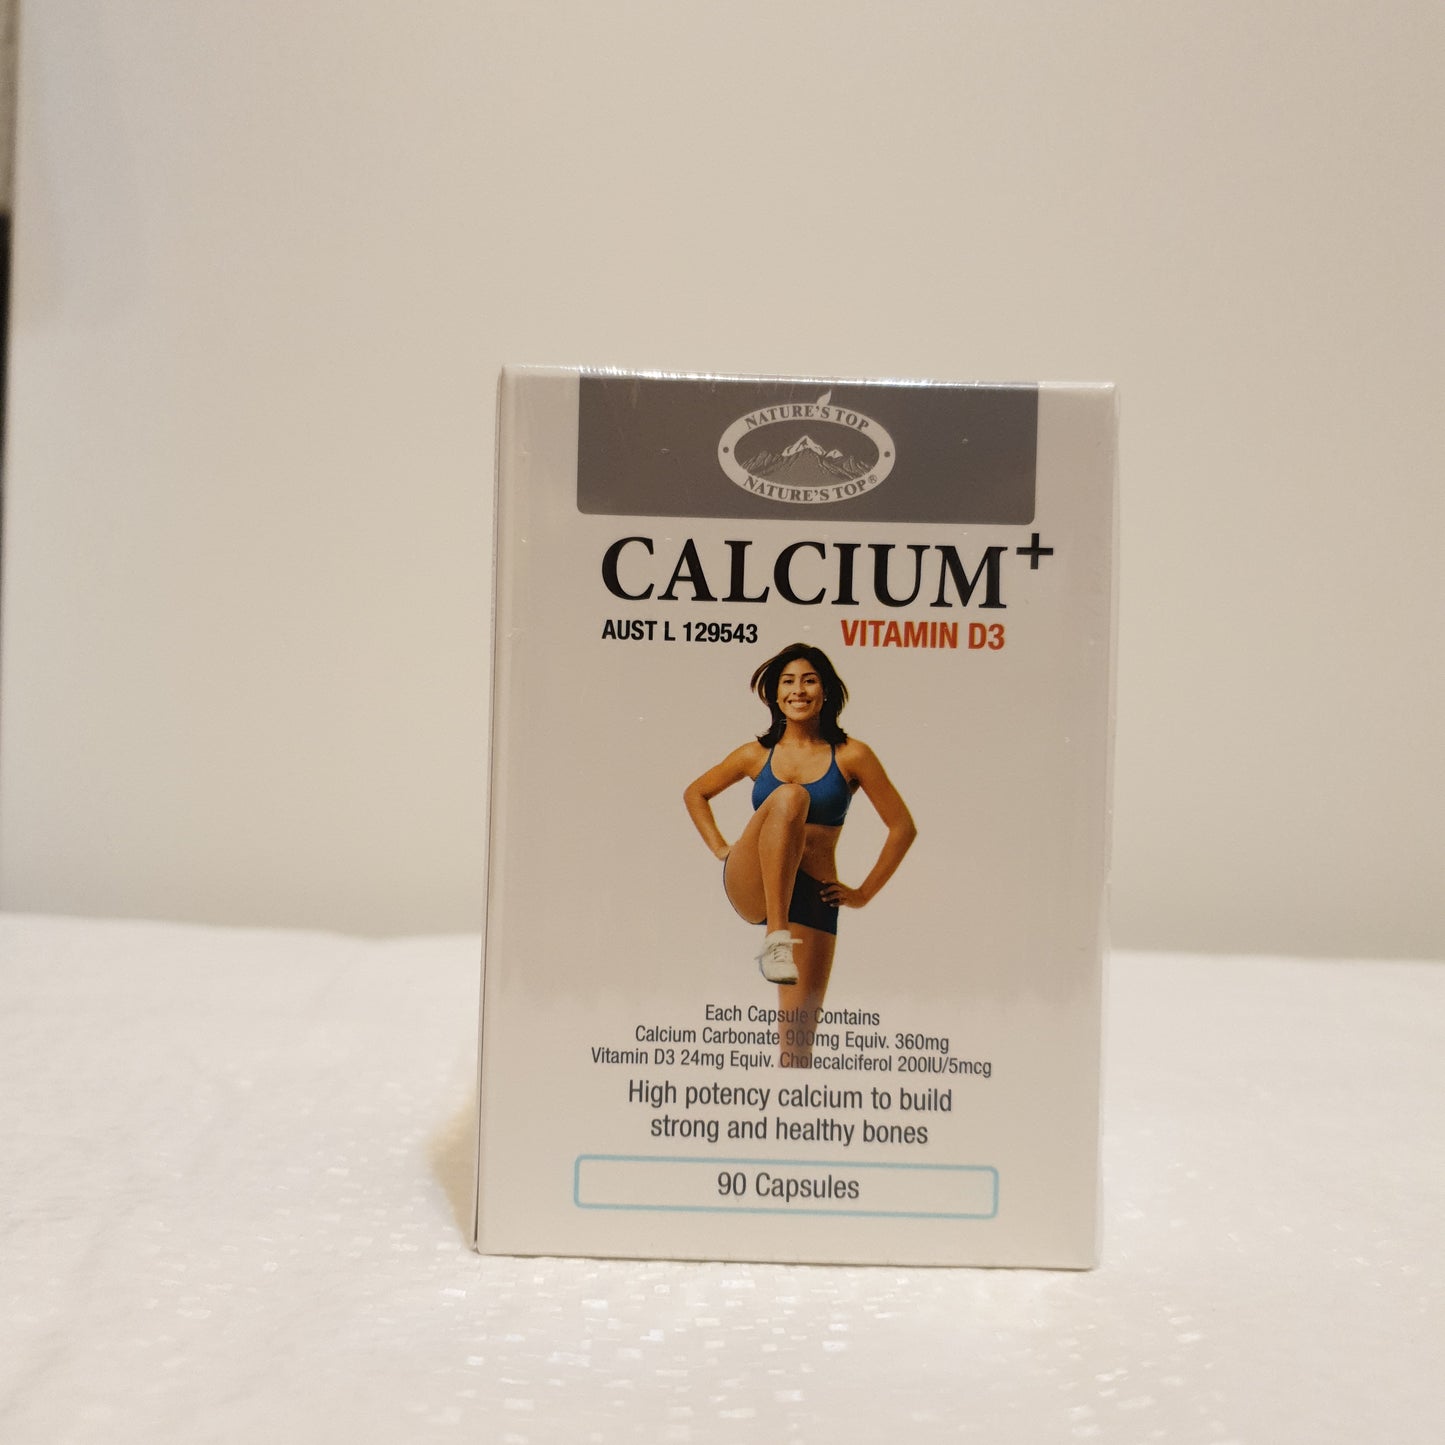 [Nature's Top] Calcium Plus Vitamin D3 *90caps